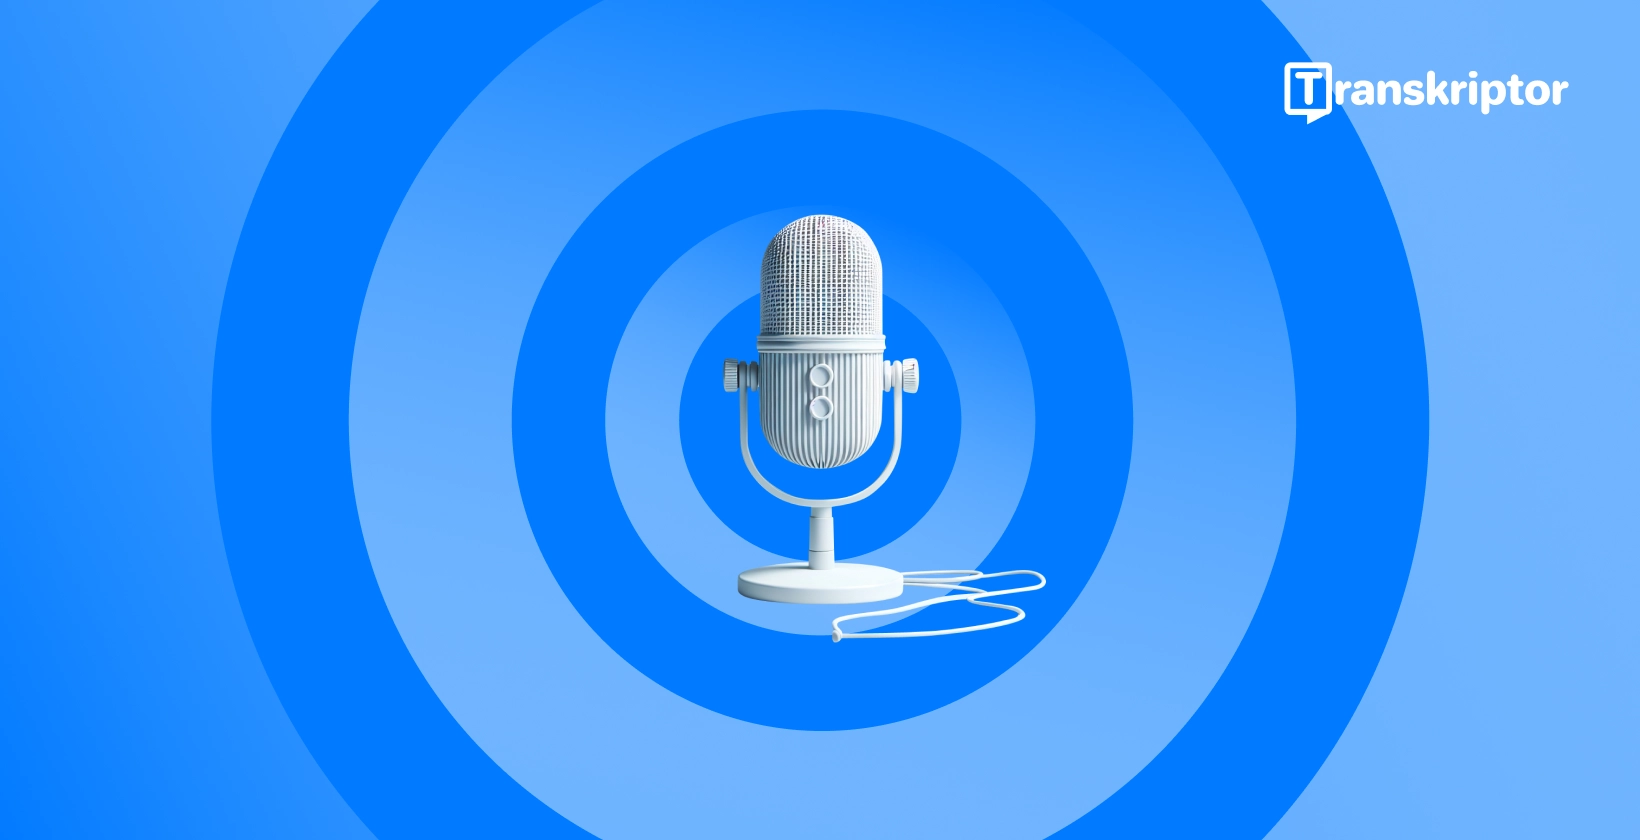 Modern mikrofon kék háttér előtt, amely a Microsoft Word hangdiktálási funkcióit szimbolizálja.